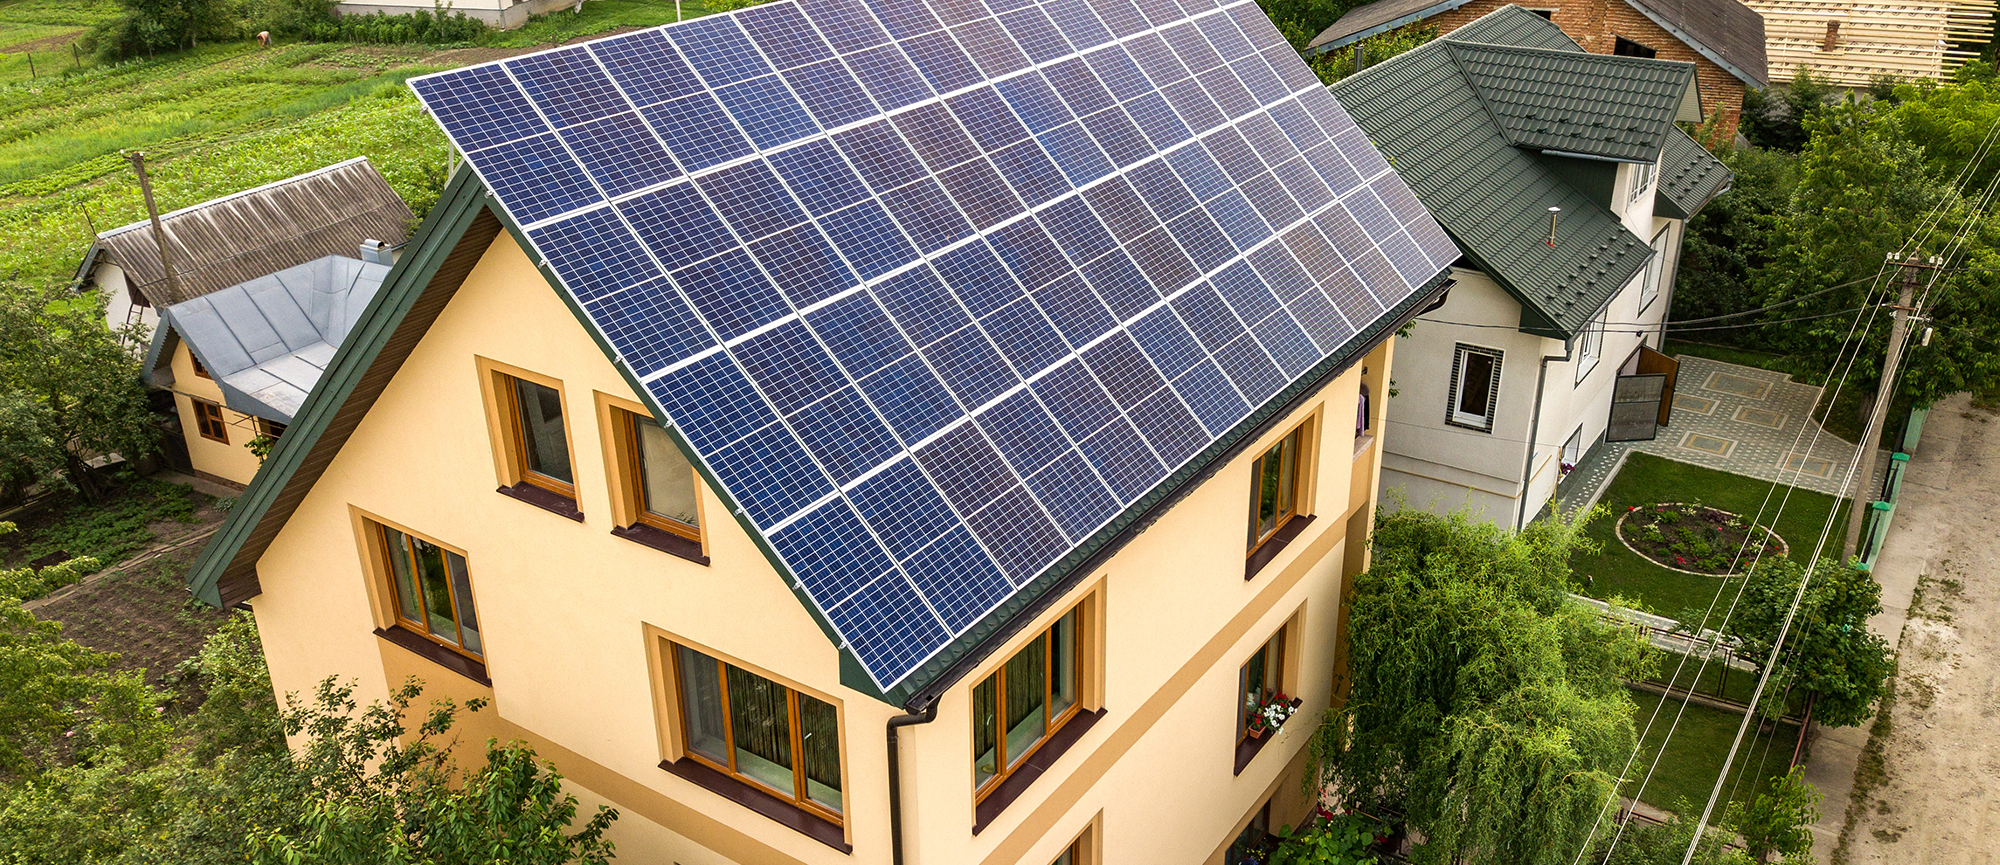 Energia solare, un'alternativa che fa bene all'ambiente